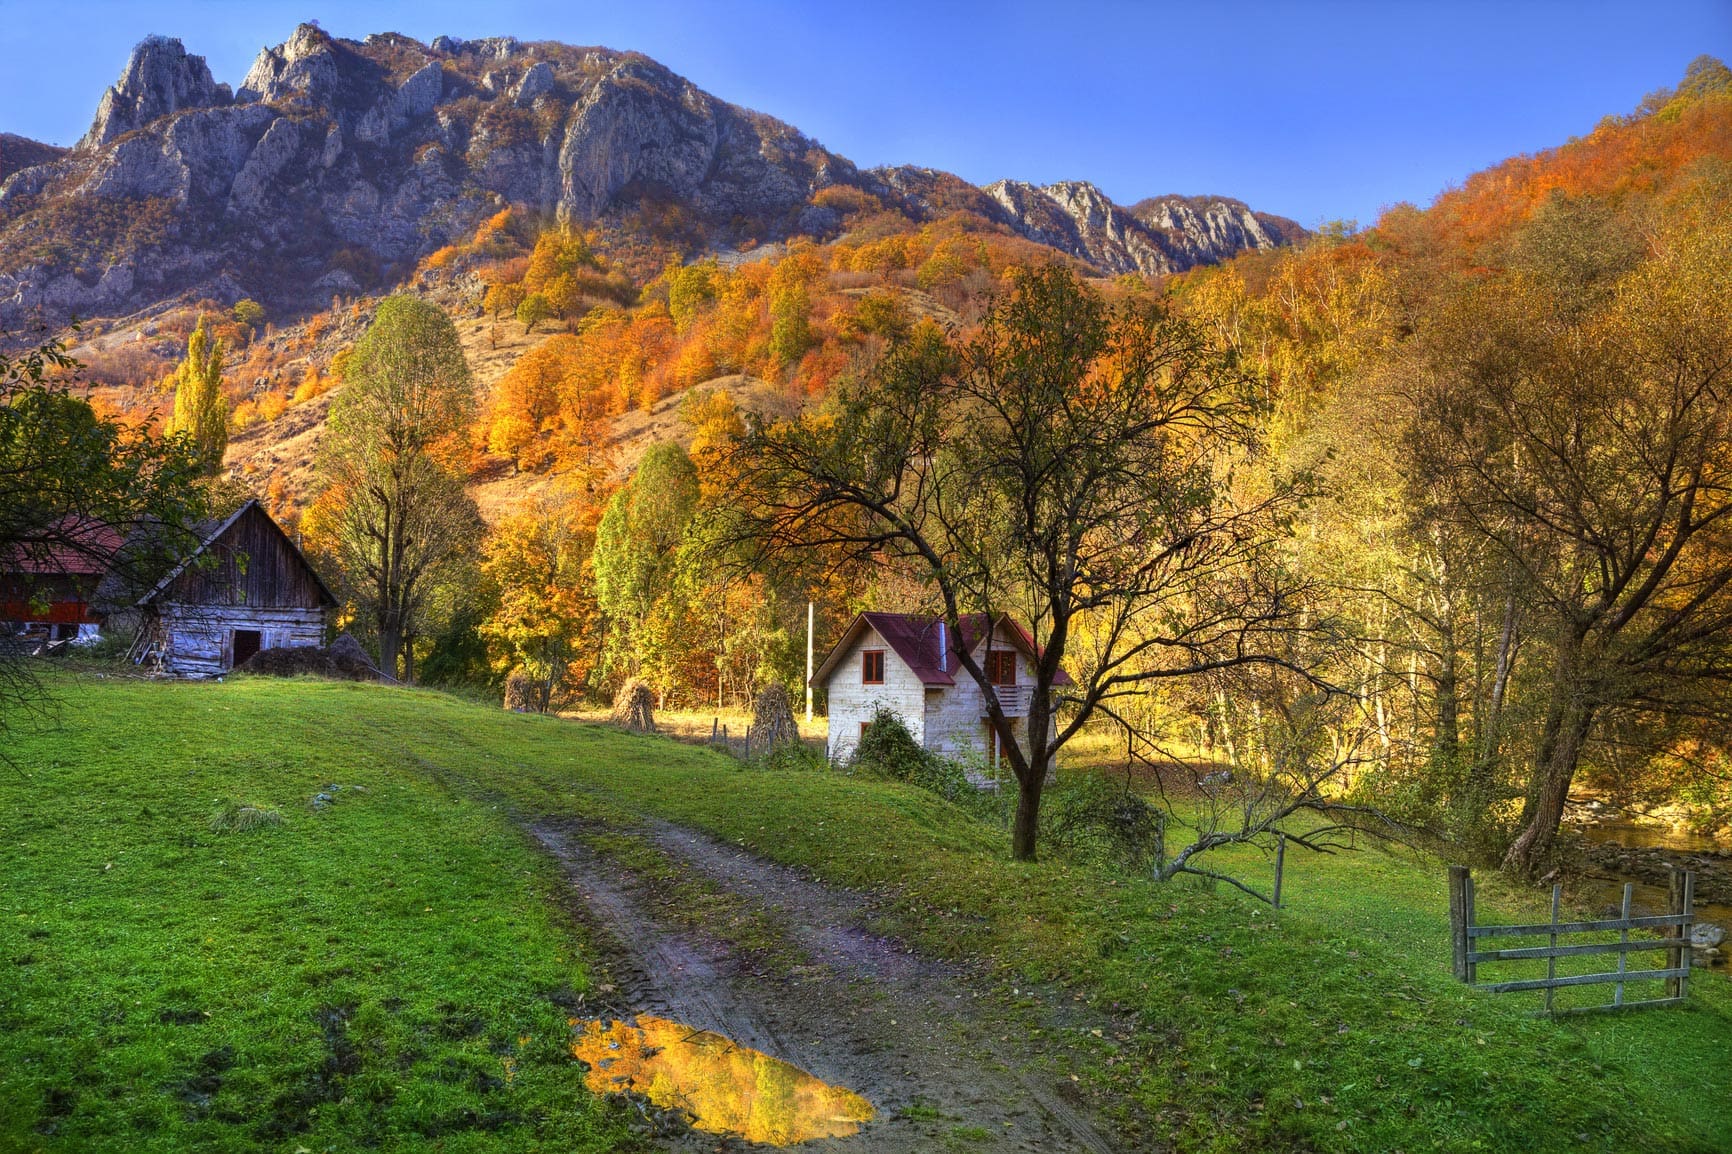 Romanian village in autumn